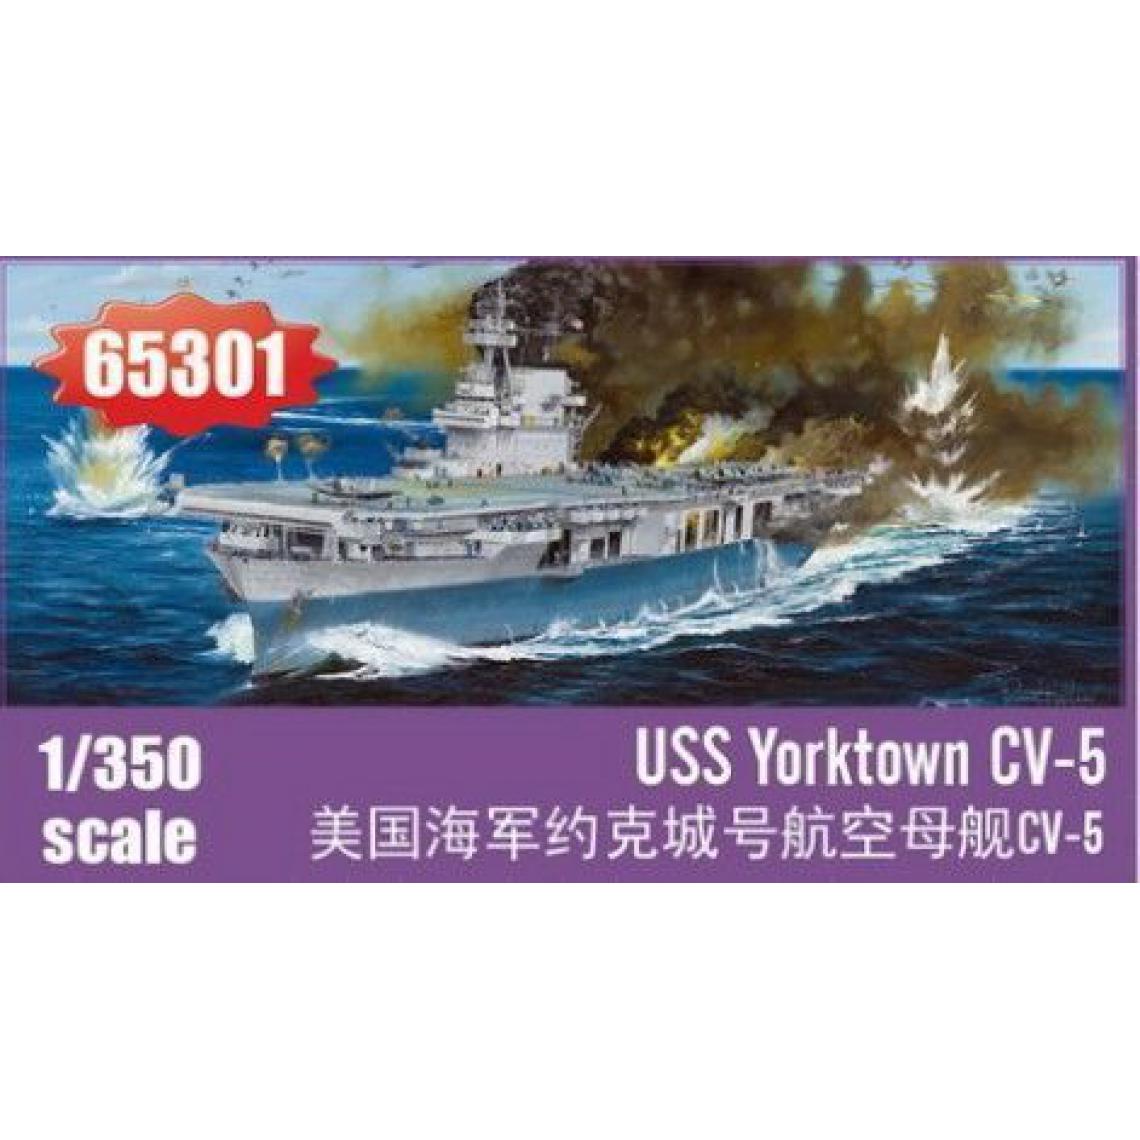 I Love Kit - USS Yorktown CV-5 - 1:350e - I LOVE KIT - Accessoires et pièces